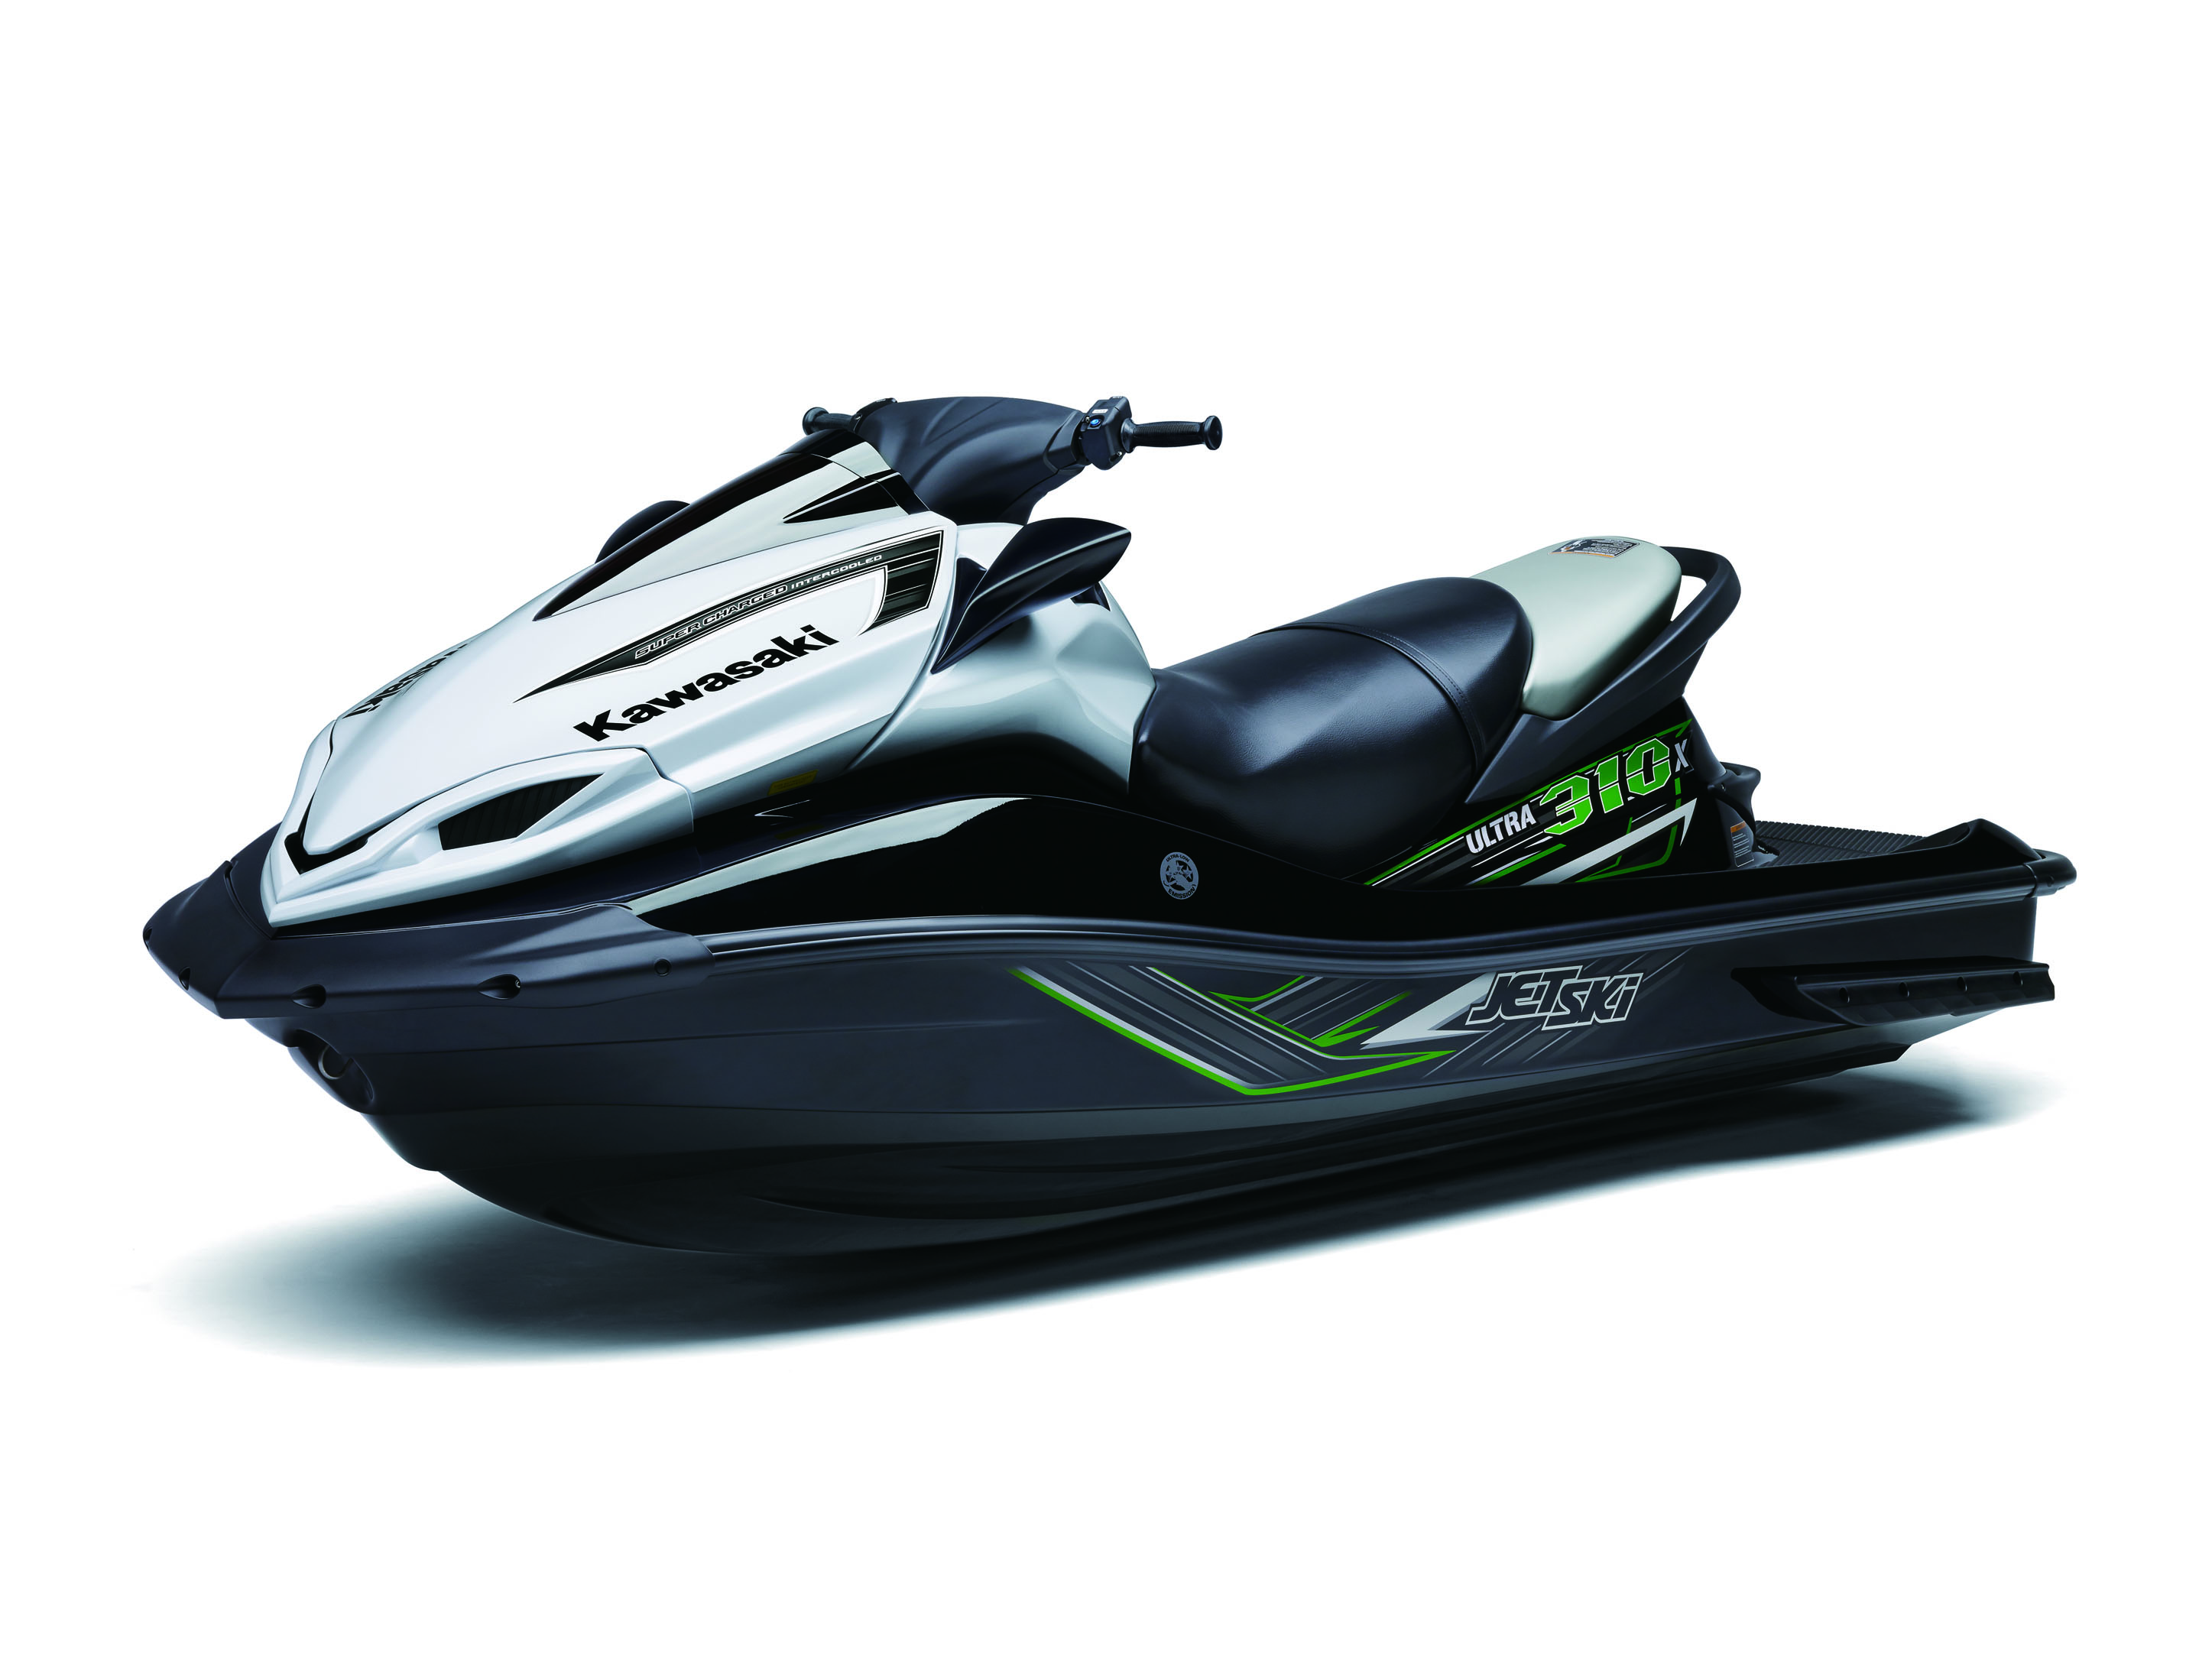 SeaDoo（喜多/庞巴迪）系列摩托艇介绍 - 哔哩哔哩